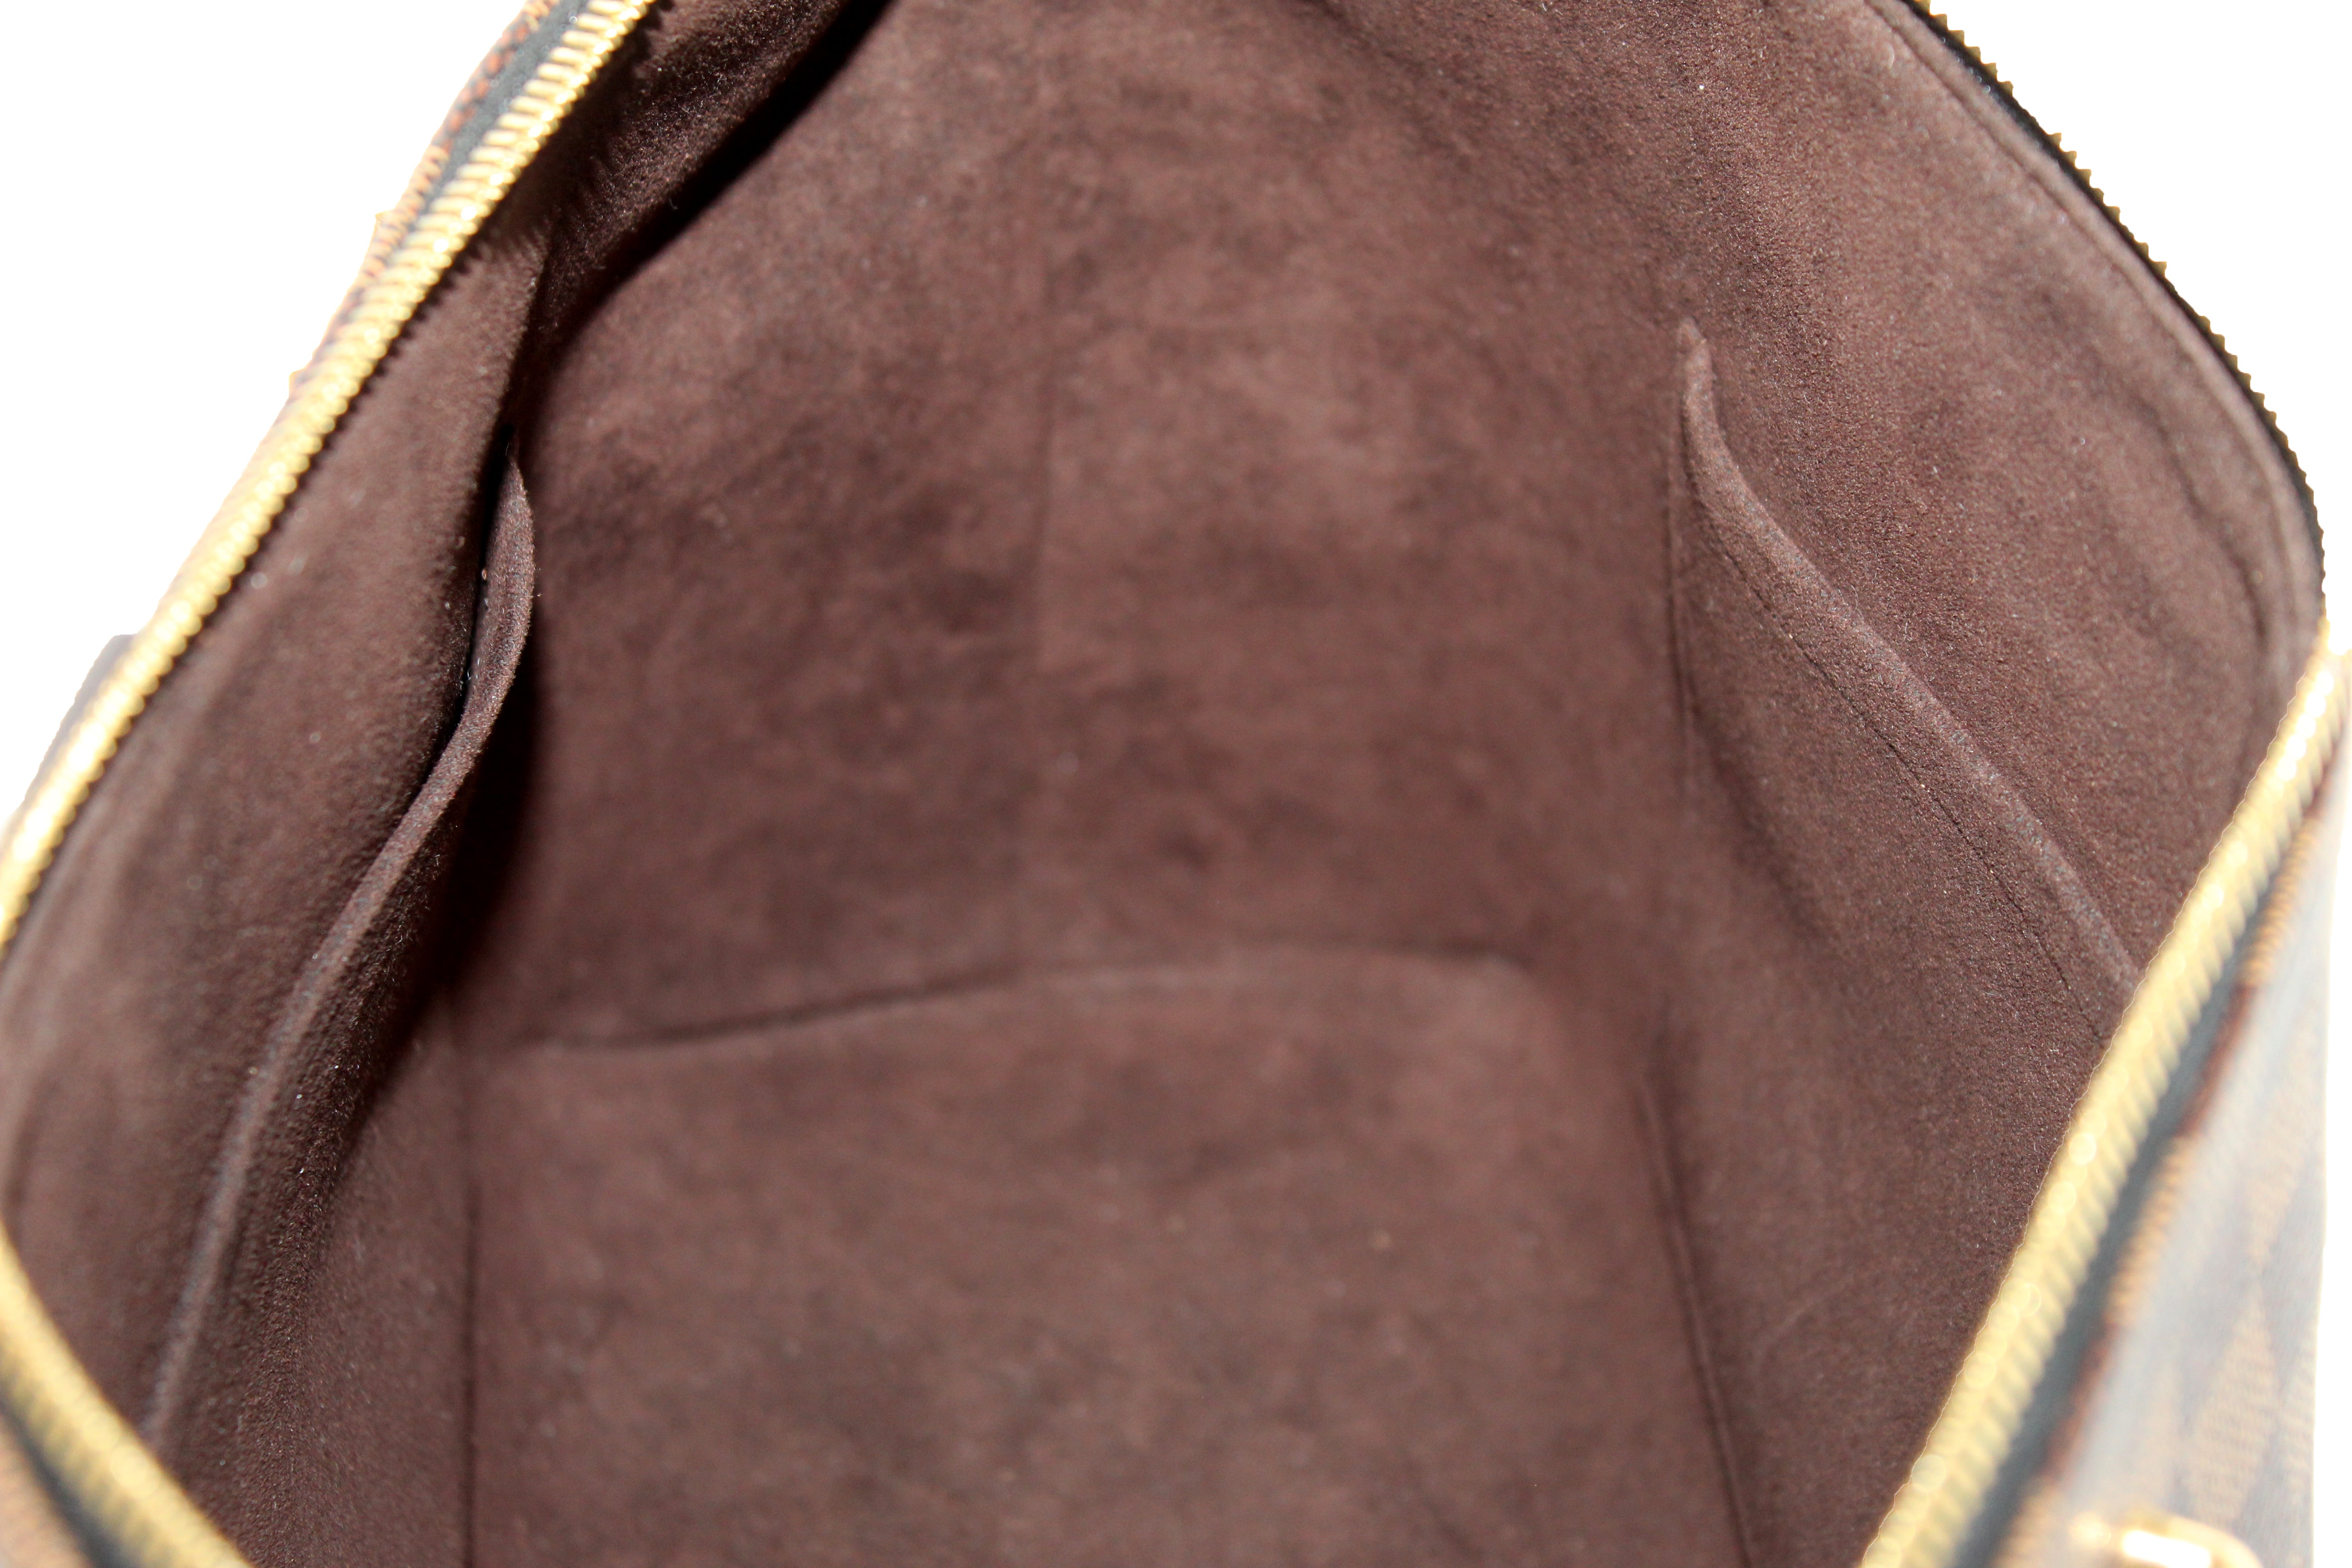 Authentic Louis Vuitton Damier Ebene Canvas Hyde Park Tote Bag with Strap